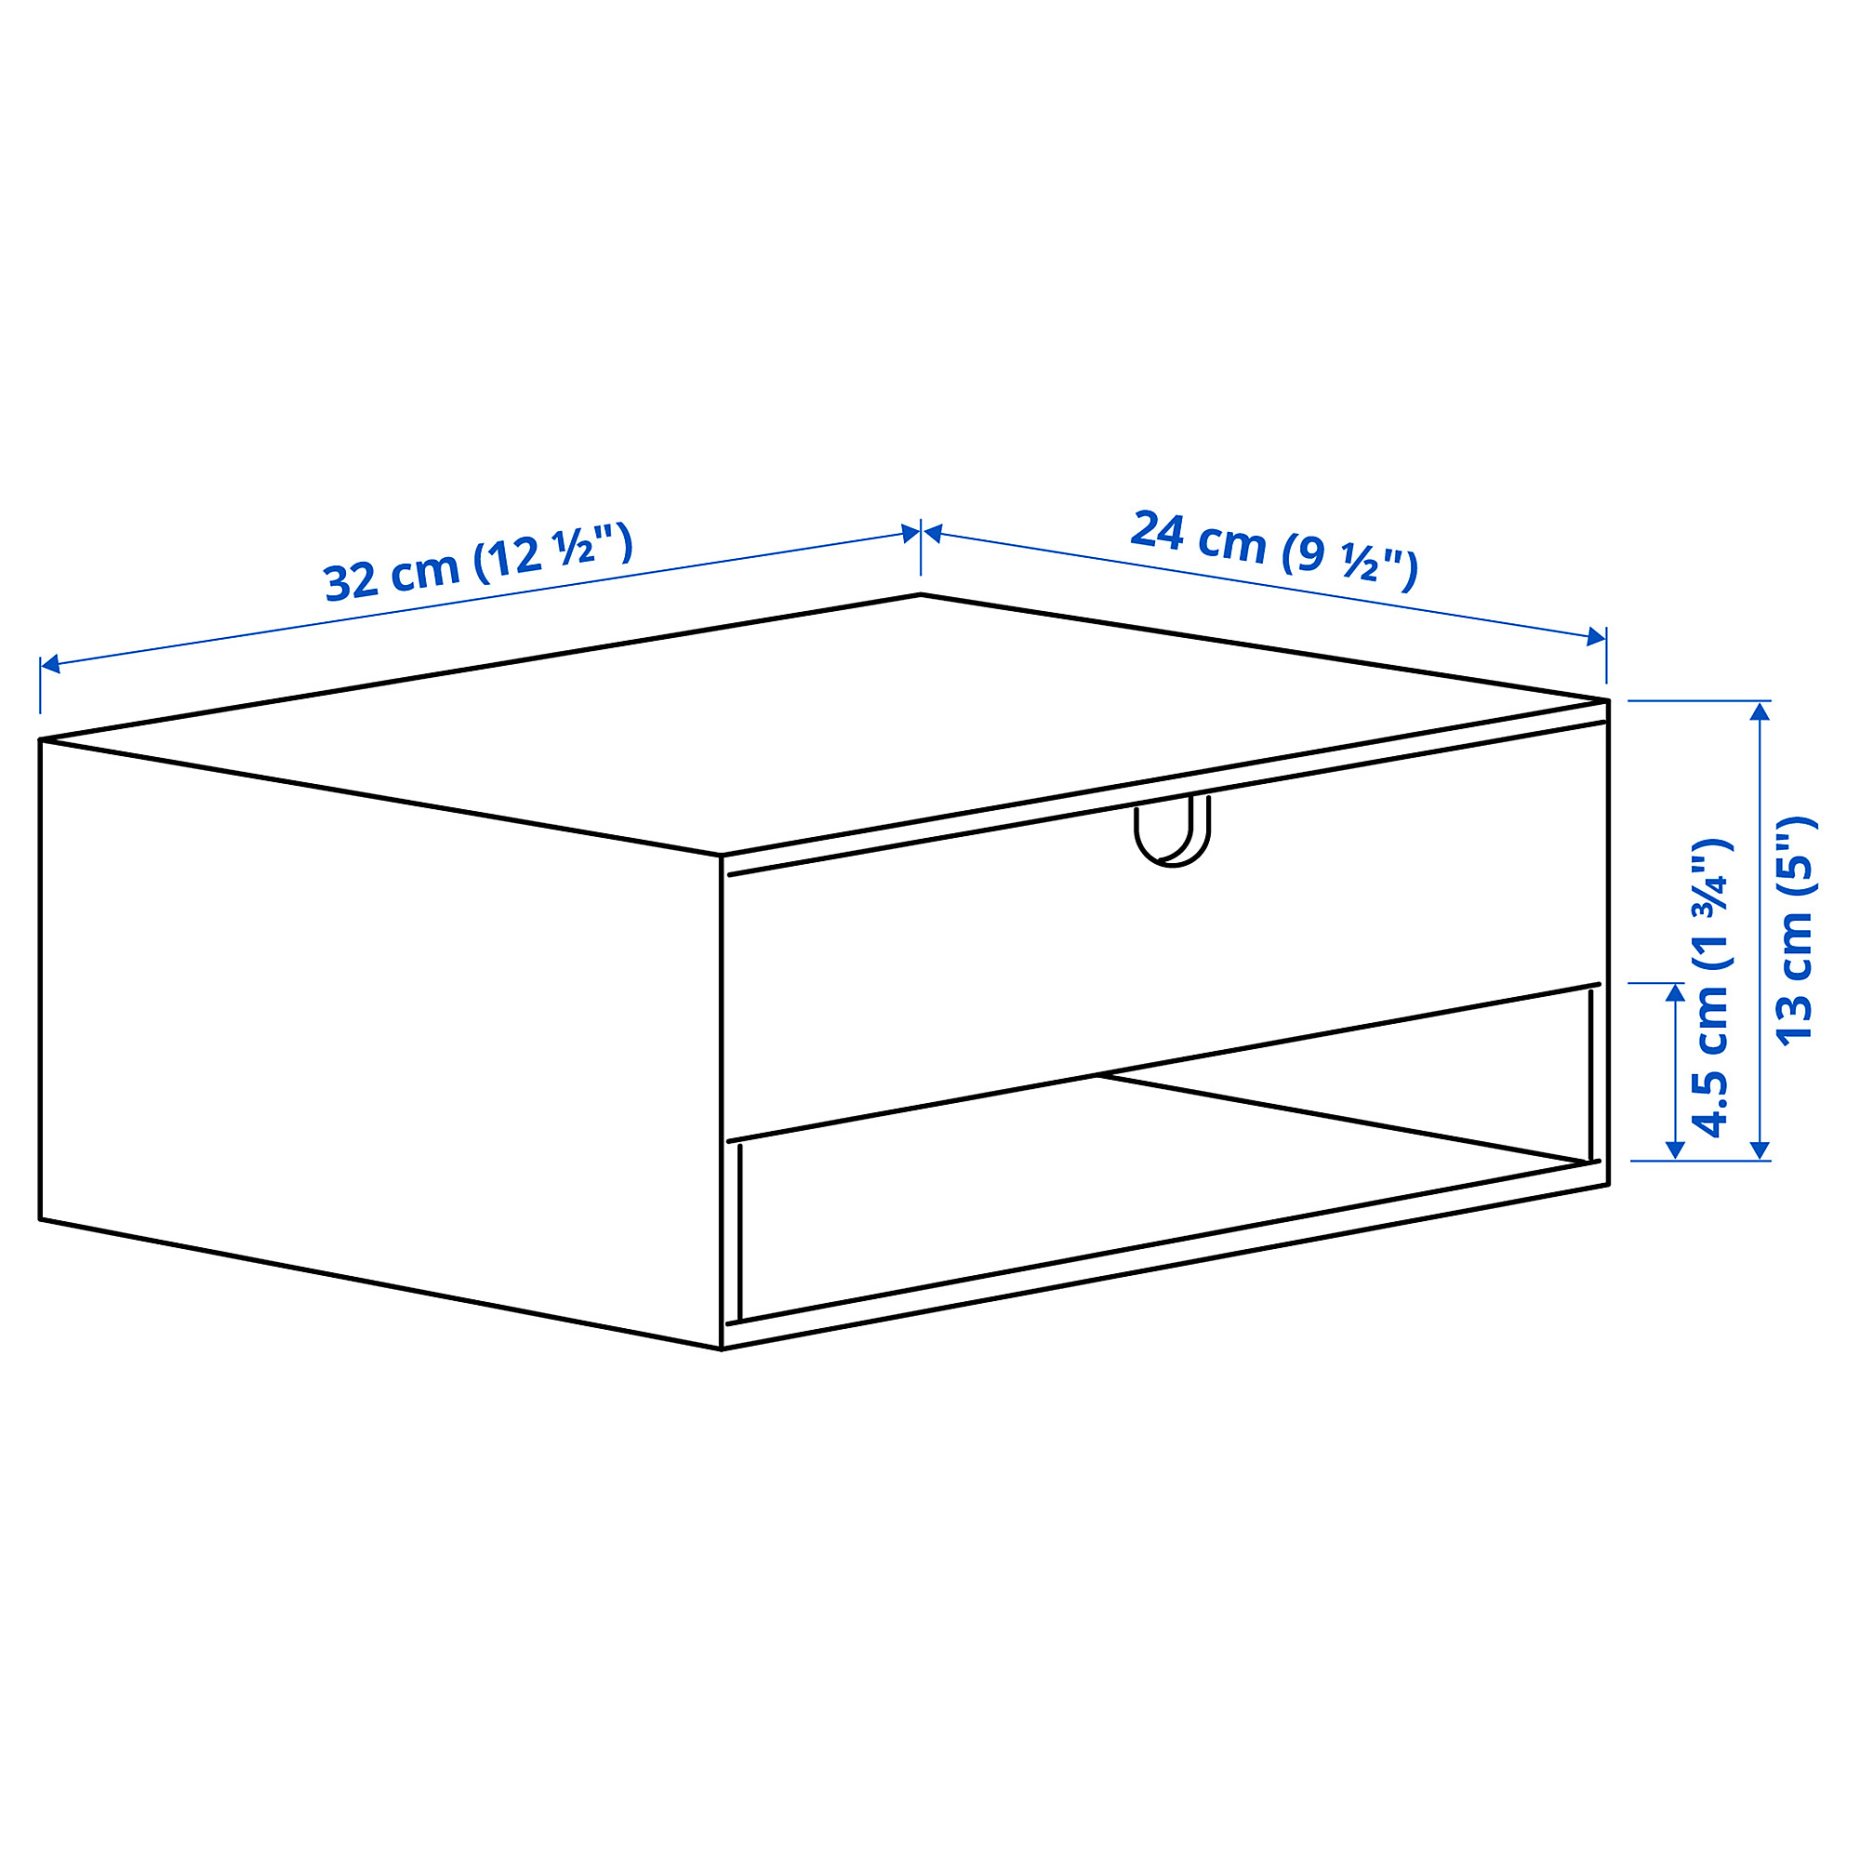 HÄSTVISKARE, κουτί αποθήκευσης με συρτάρια, 32x24 cm, 305.498.56